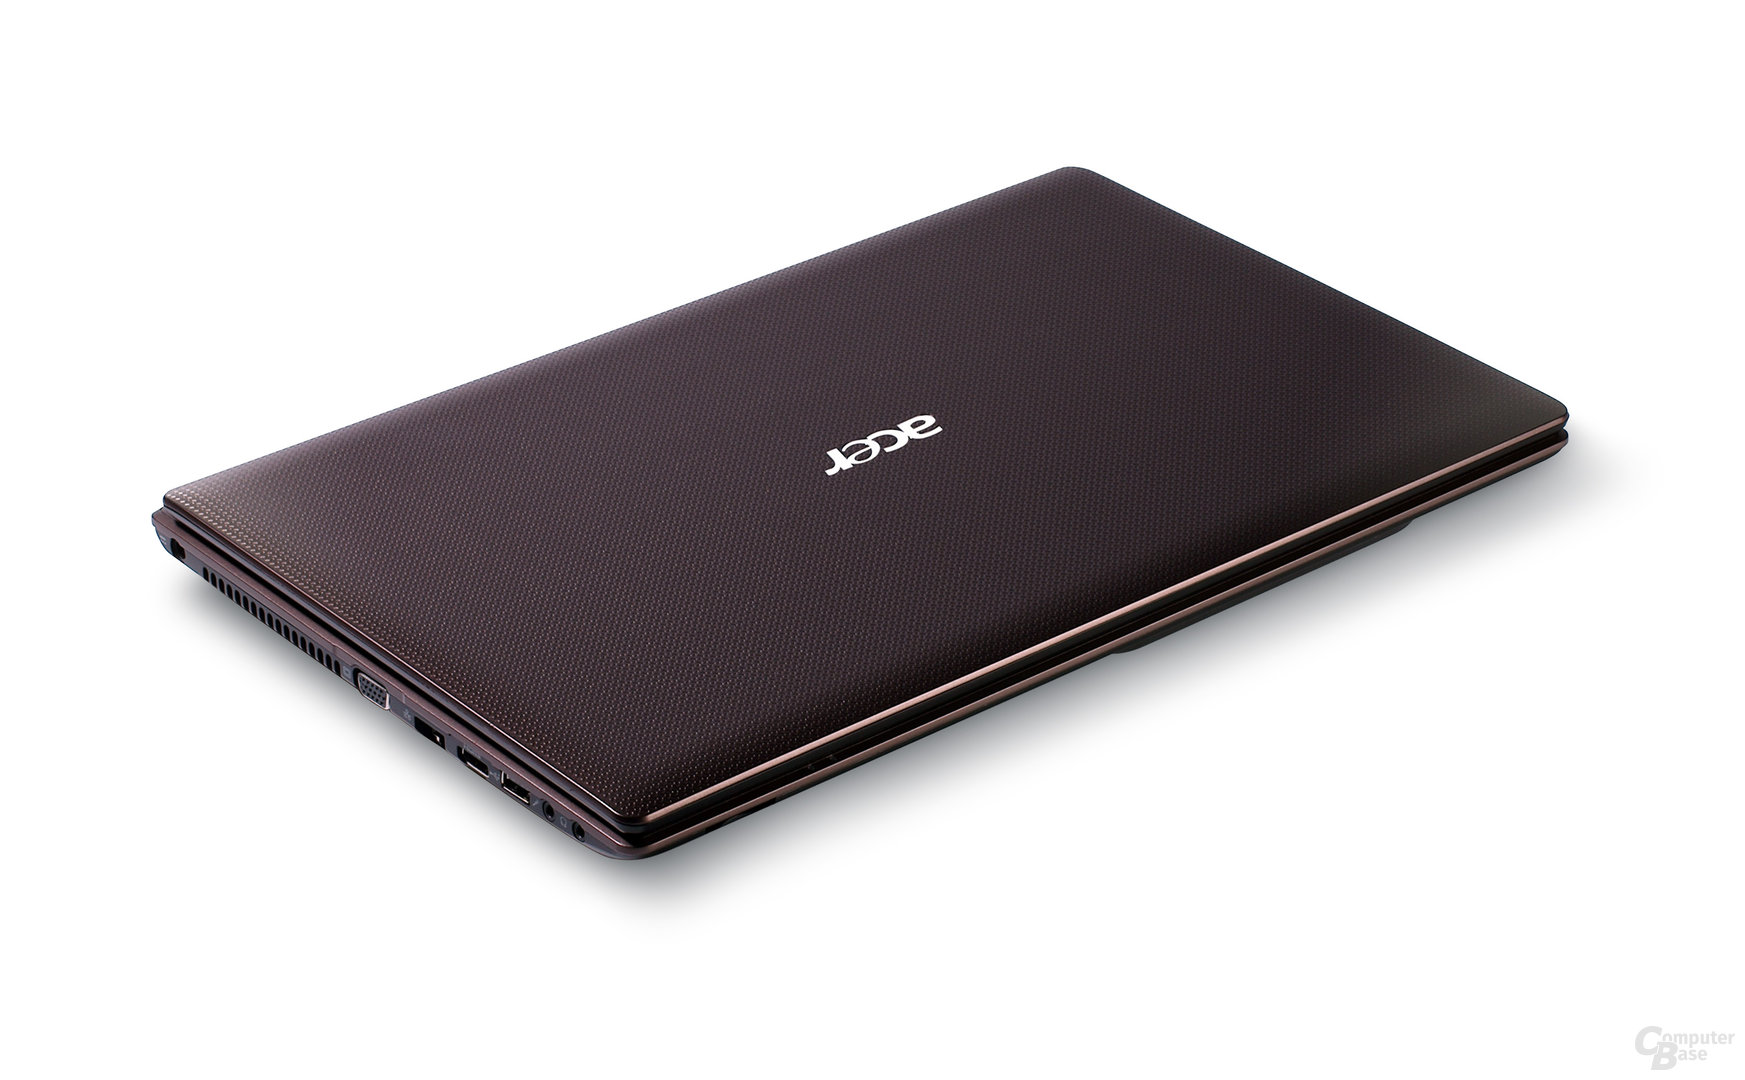 Acer Aspire 5253 in braun